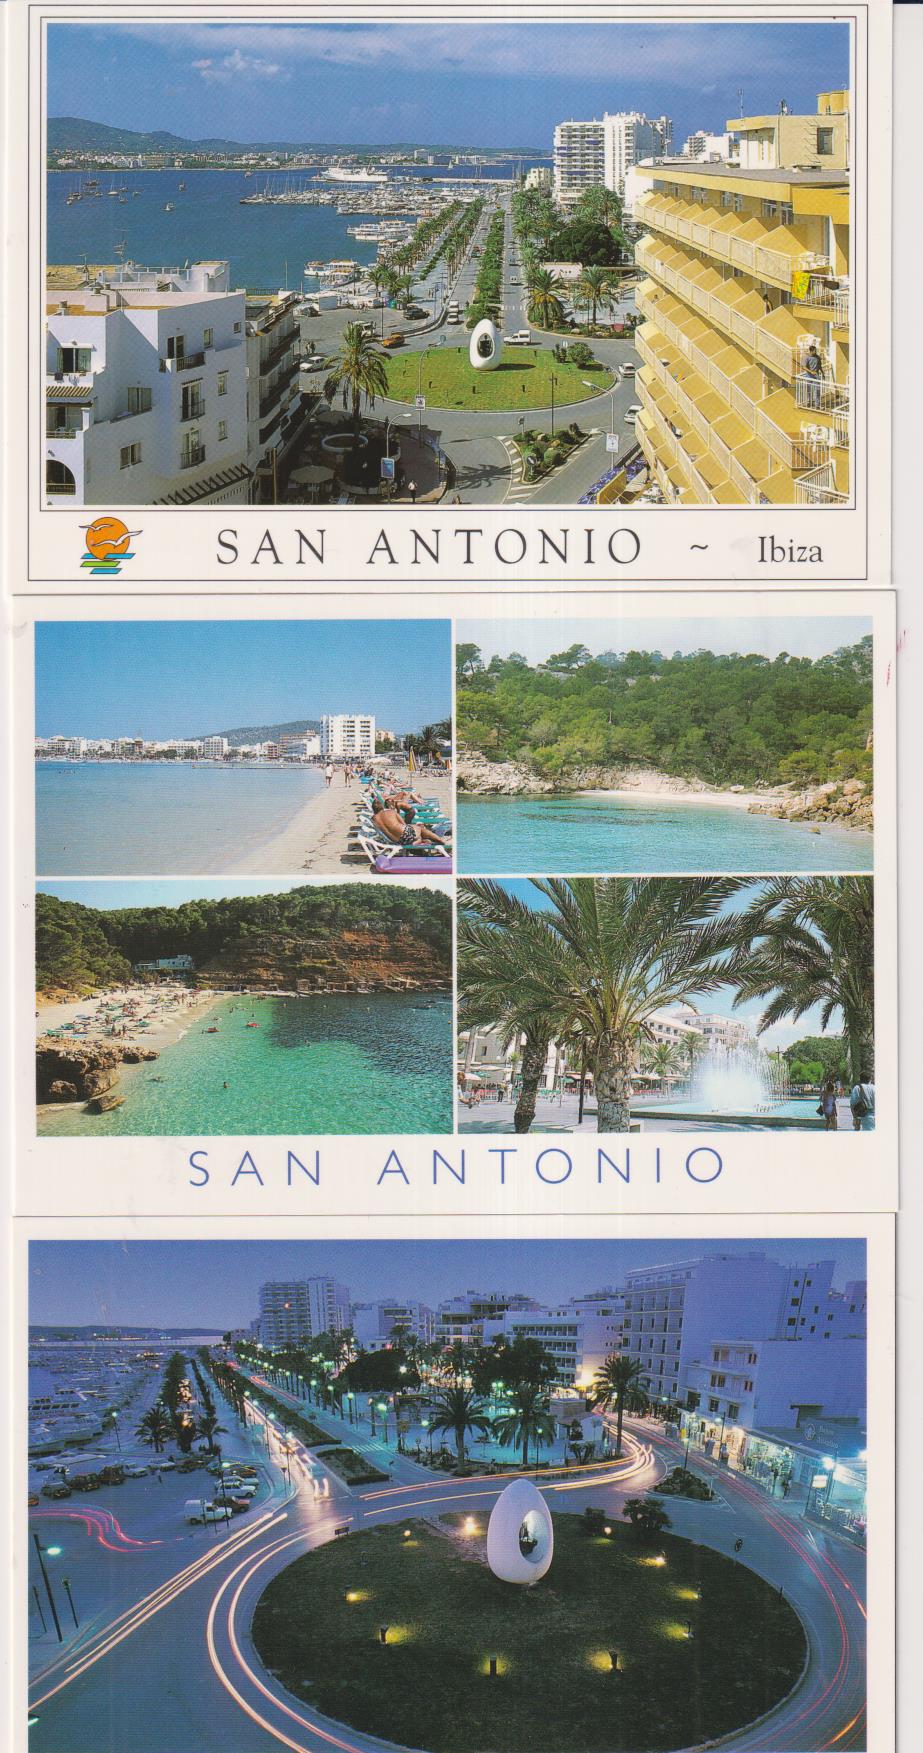 Ibiza.- Lote de 3 postales de San Antonio